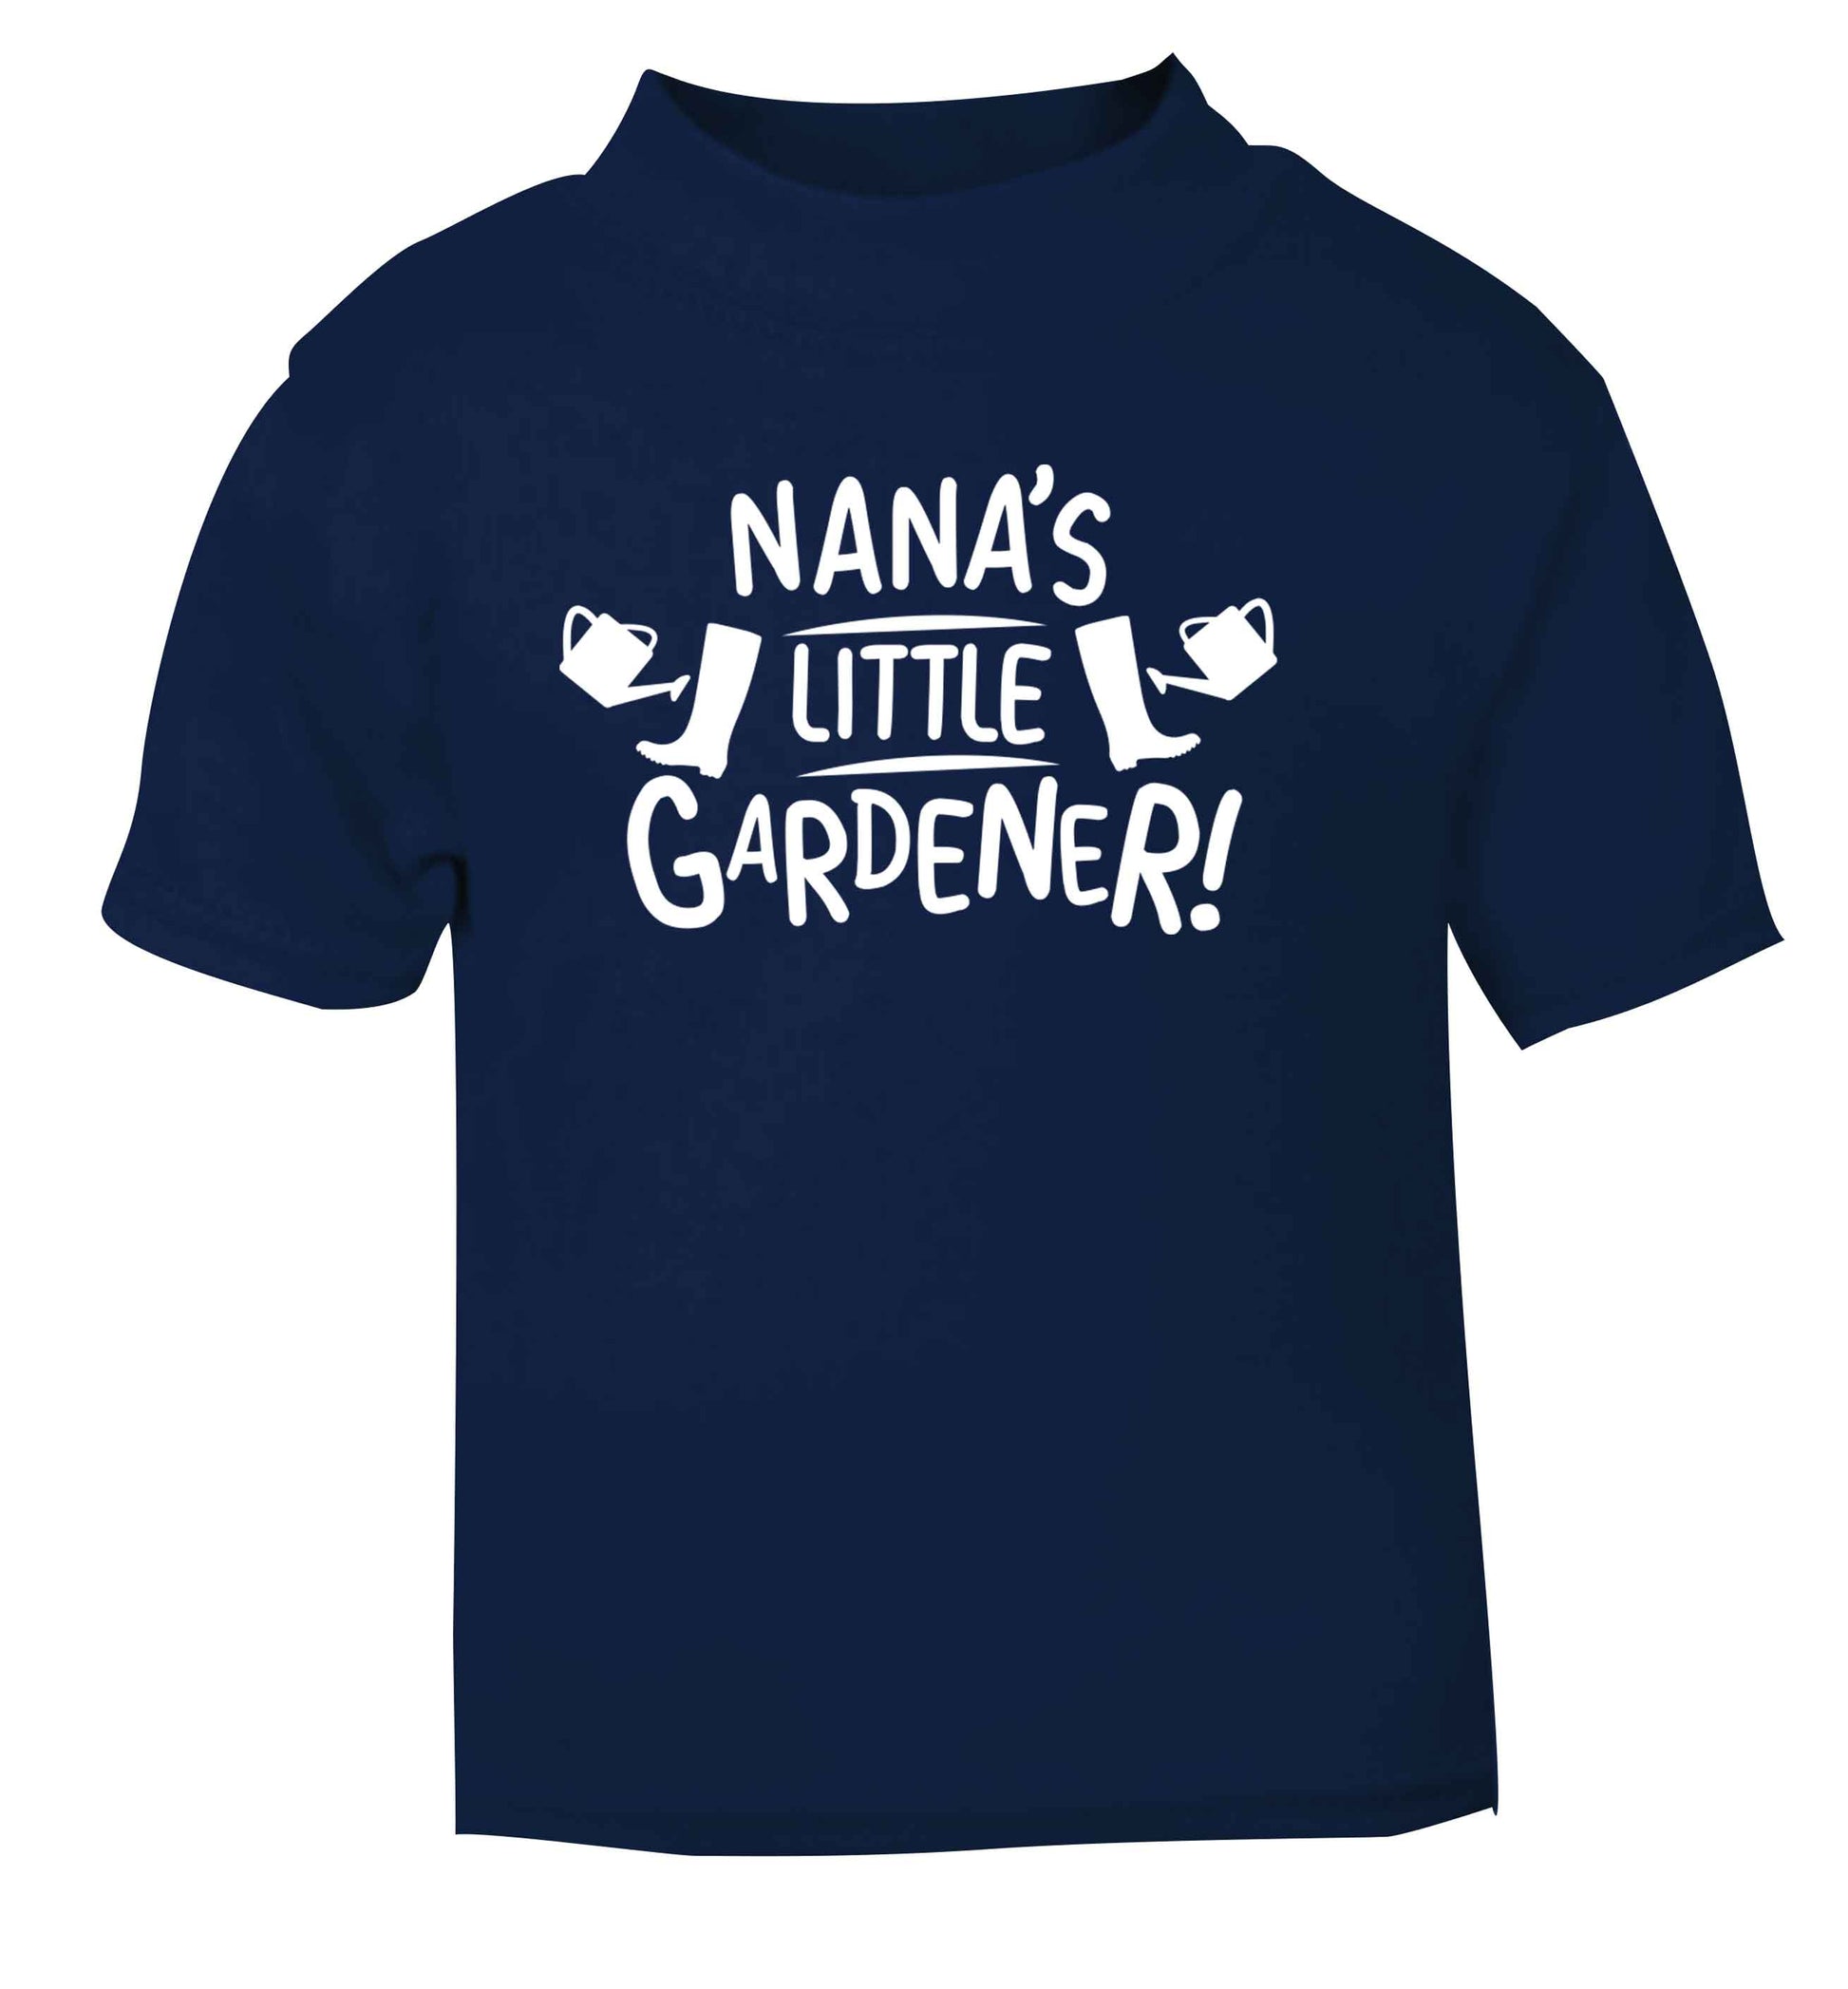 Nana's little gardener navy Baby Toddler Tshirt 2 Years